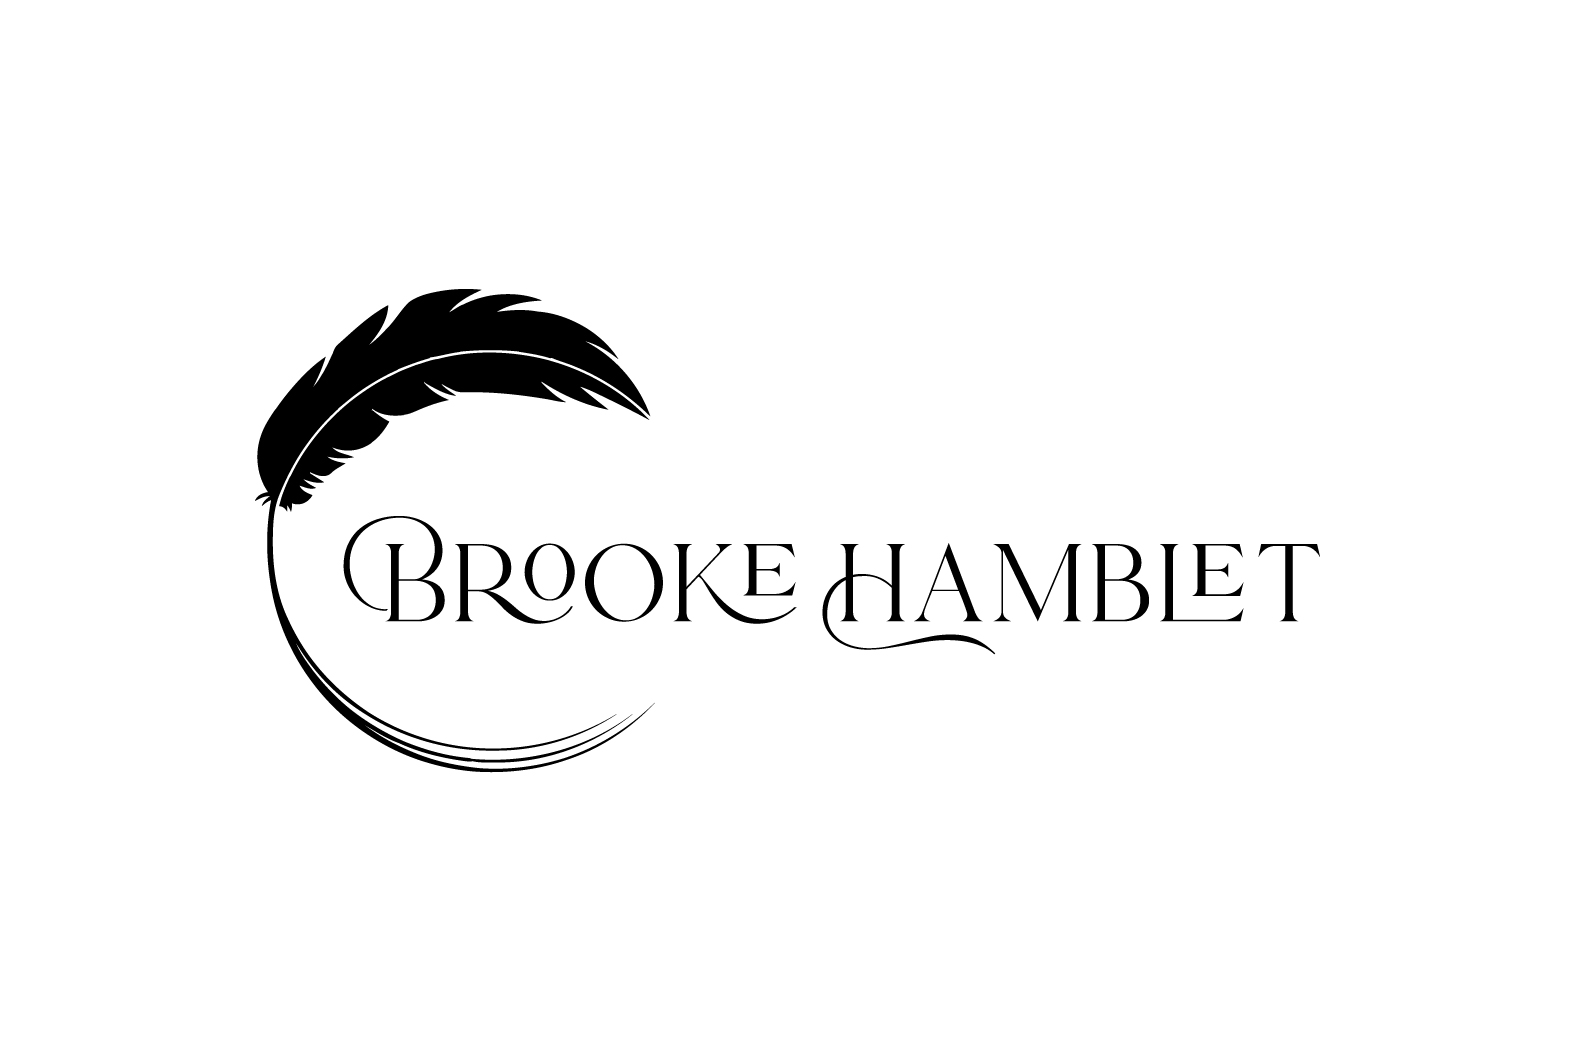 Brooke Hamblet